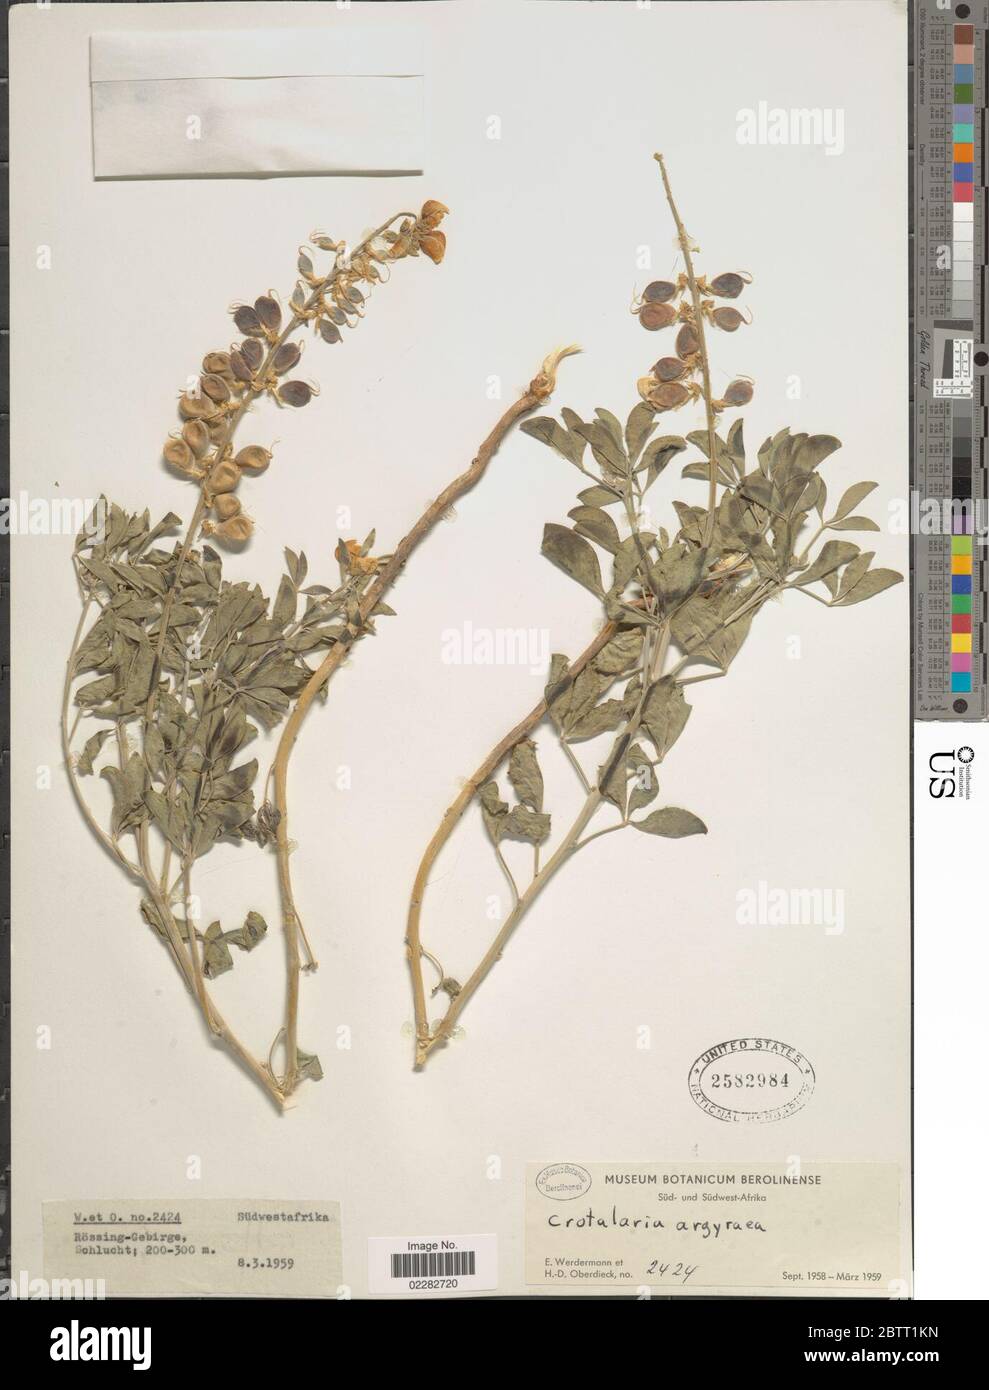 Crotalaria argyraea. Stock Photo